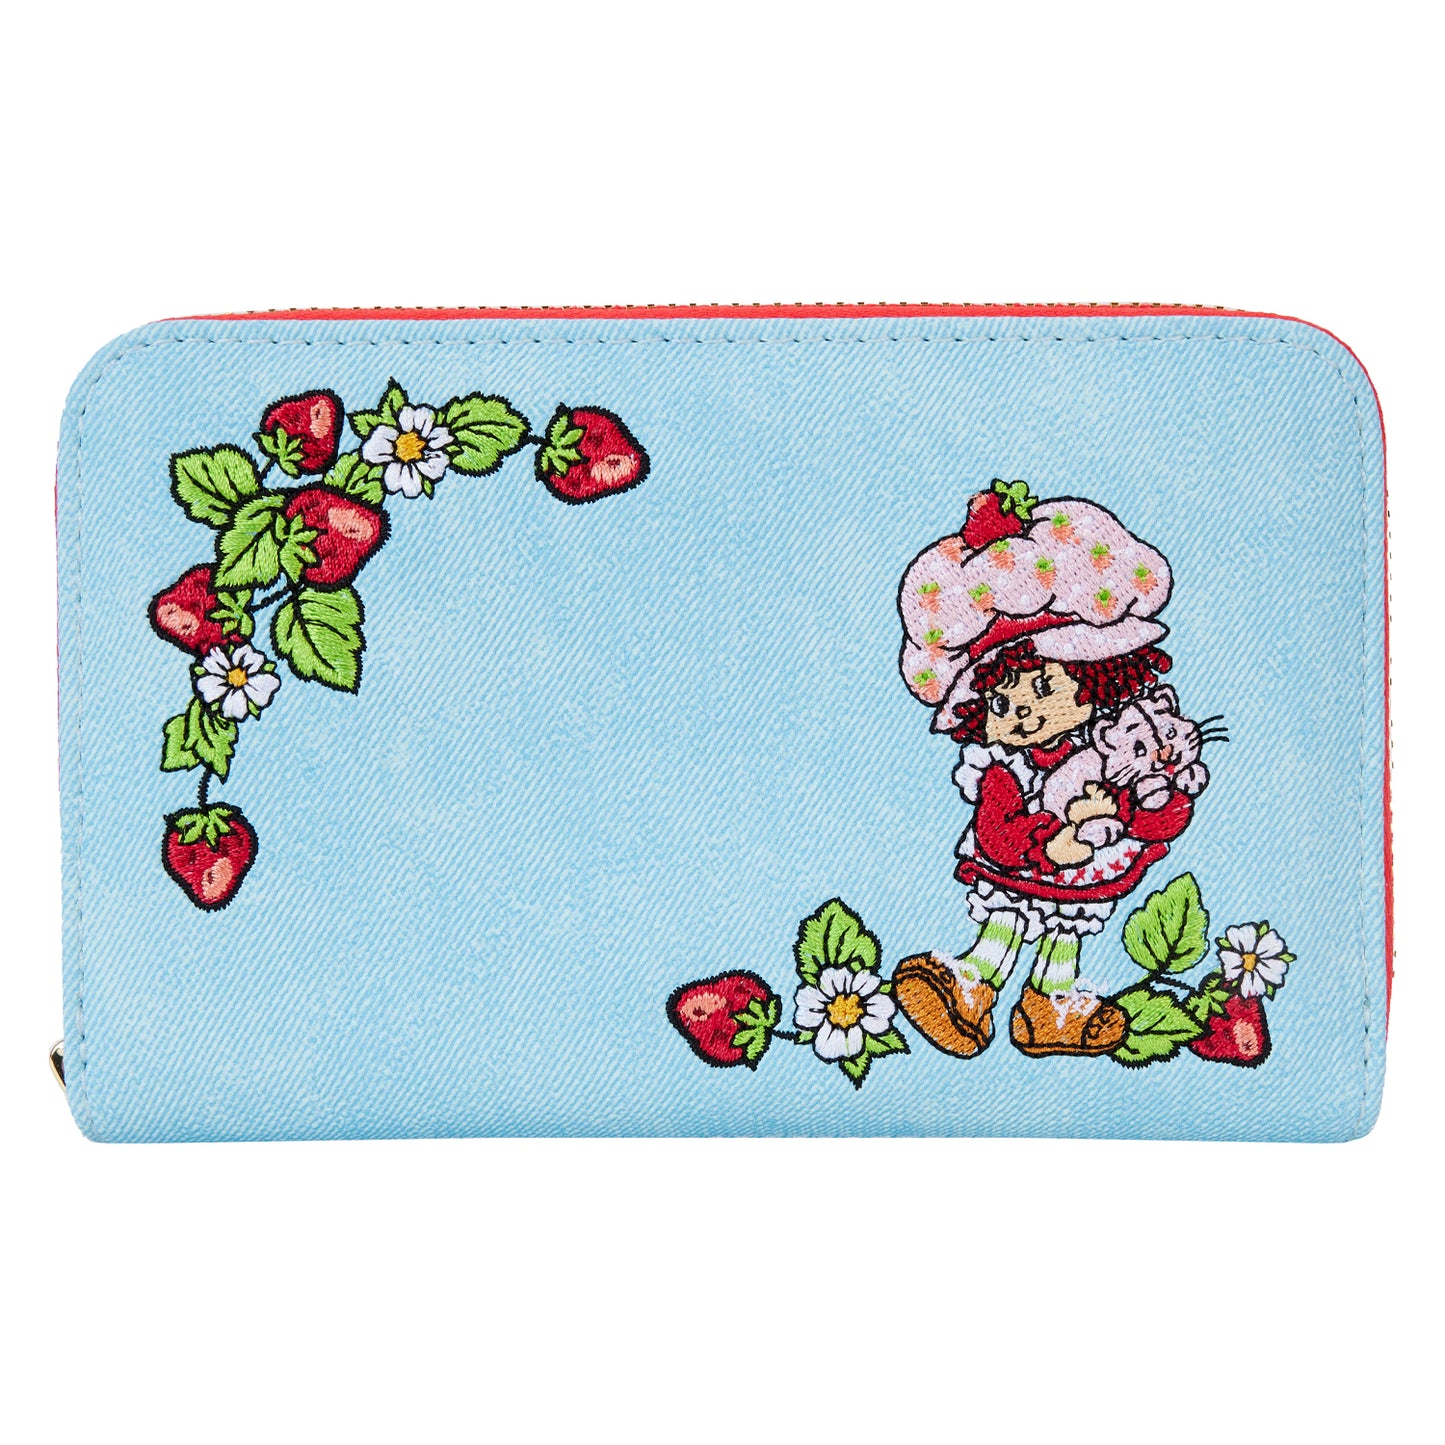 Strawberry Shortcake Denim Zip Around Wallet LFY